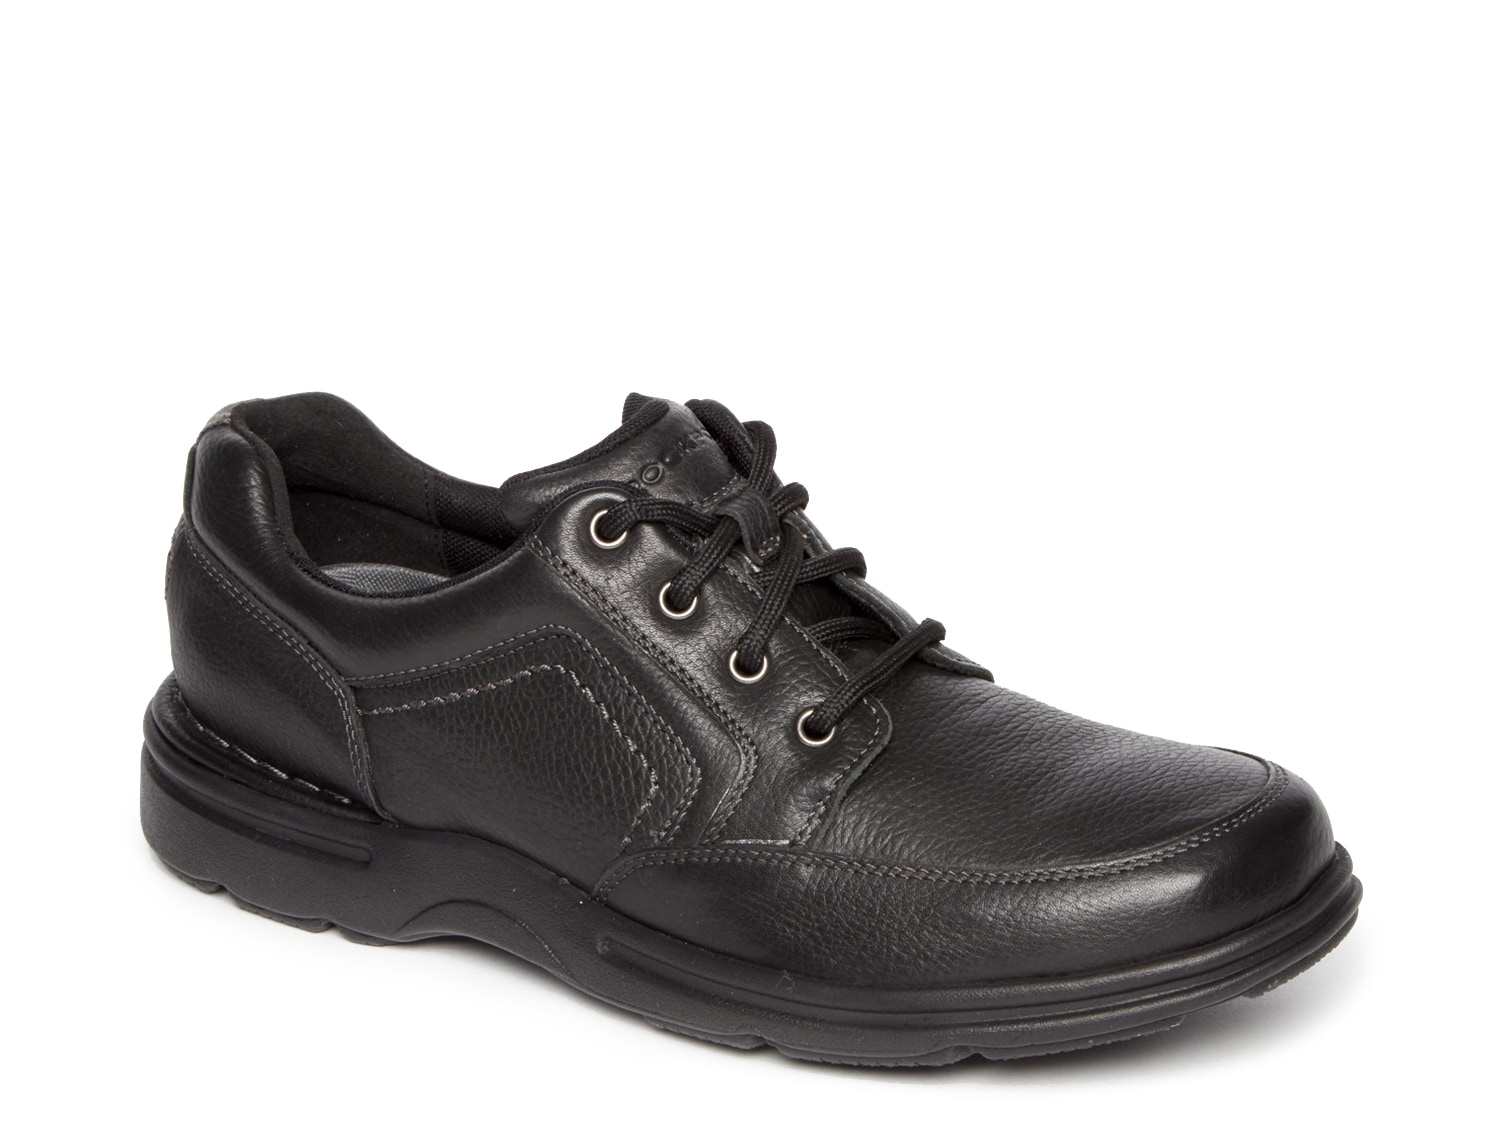 rockport slip resistant mens shoes